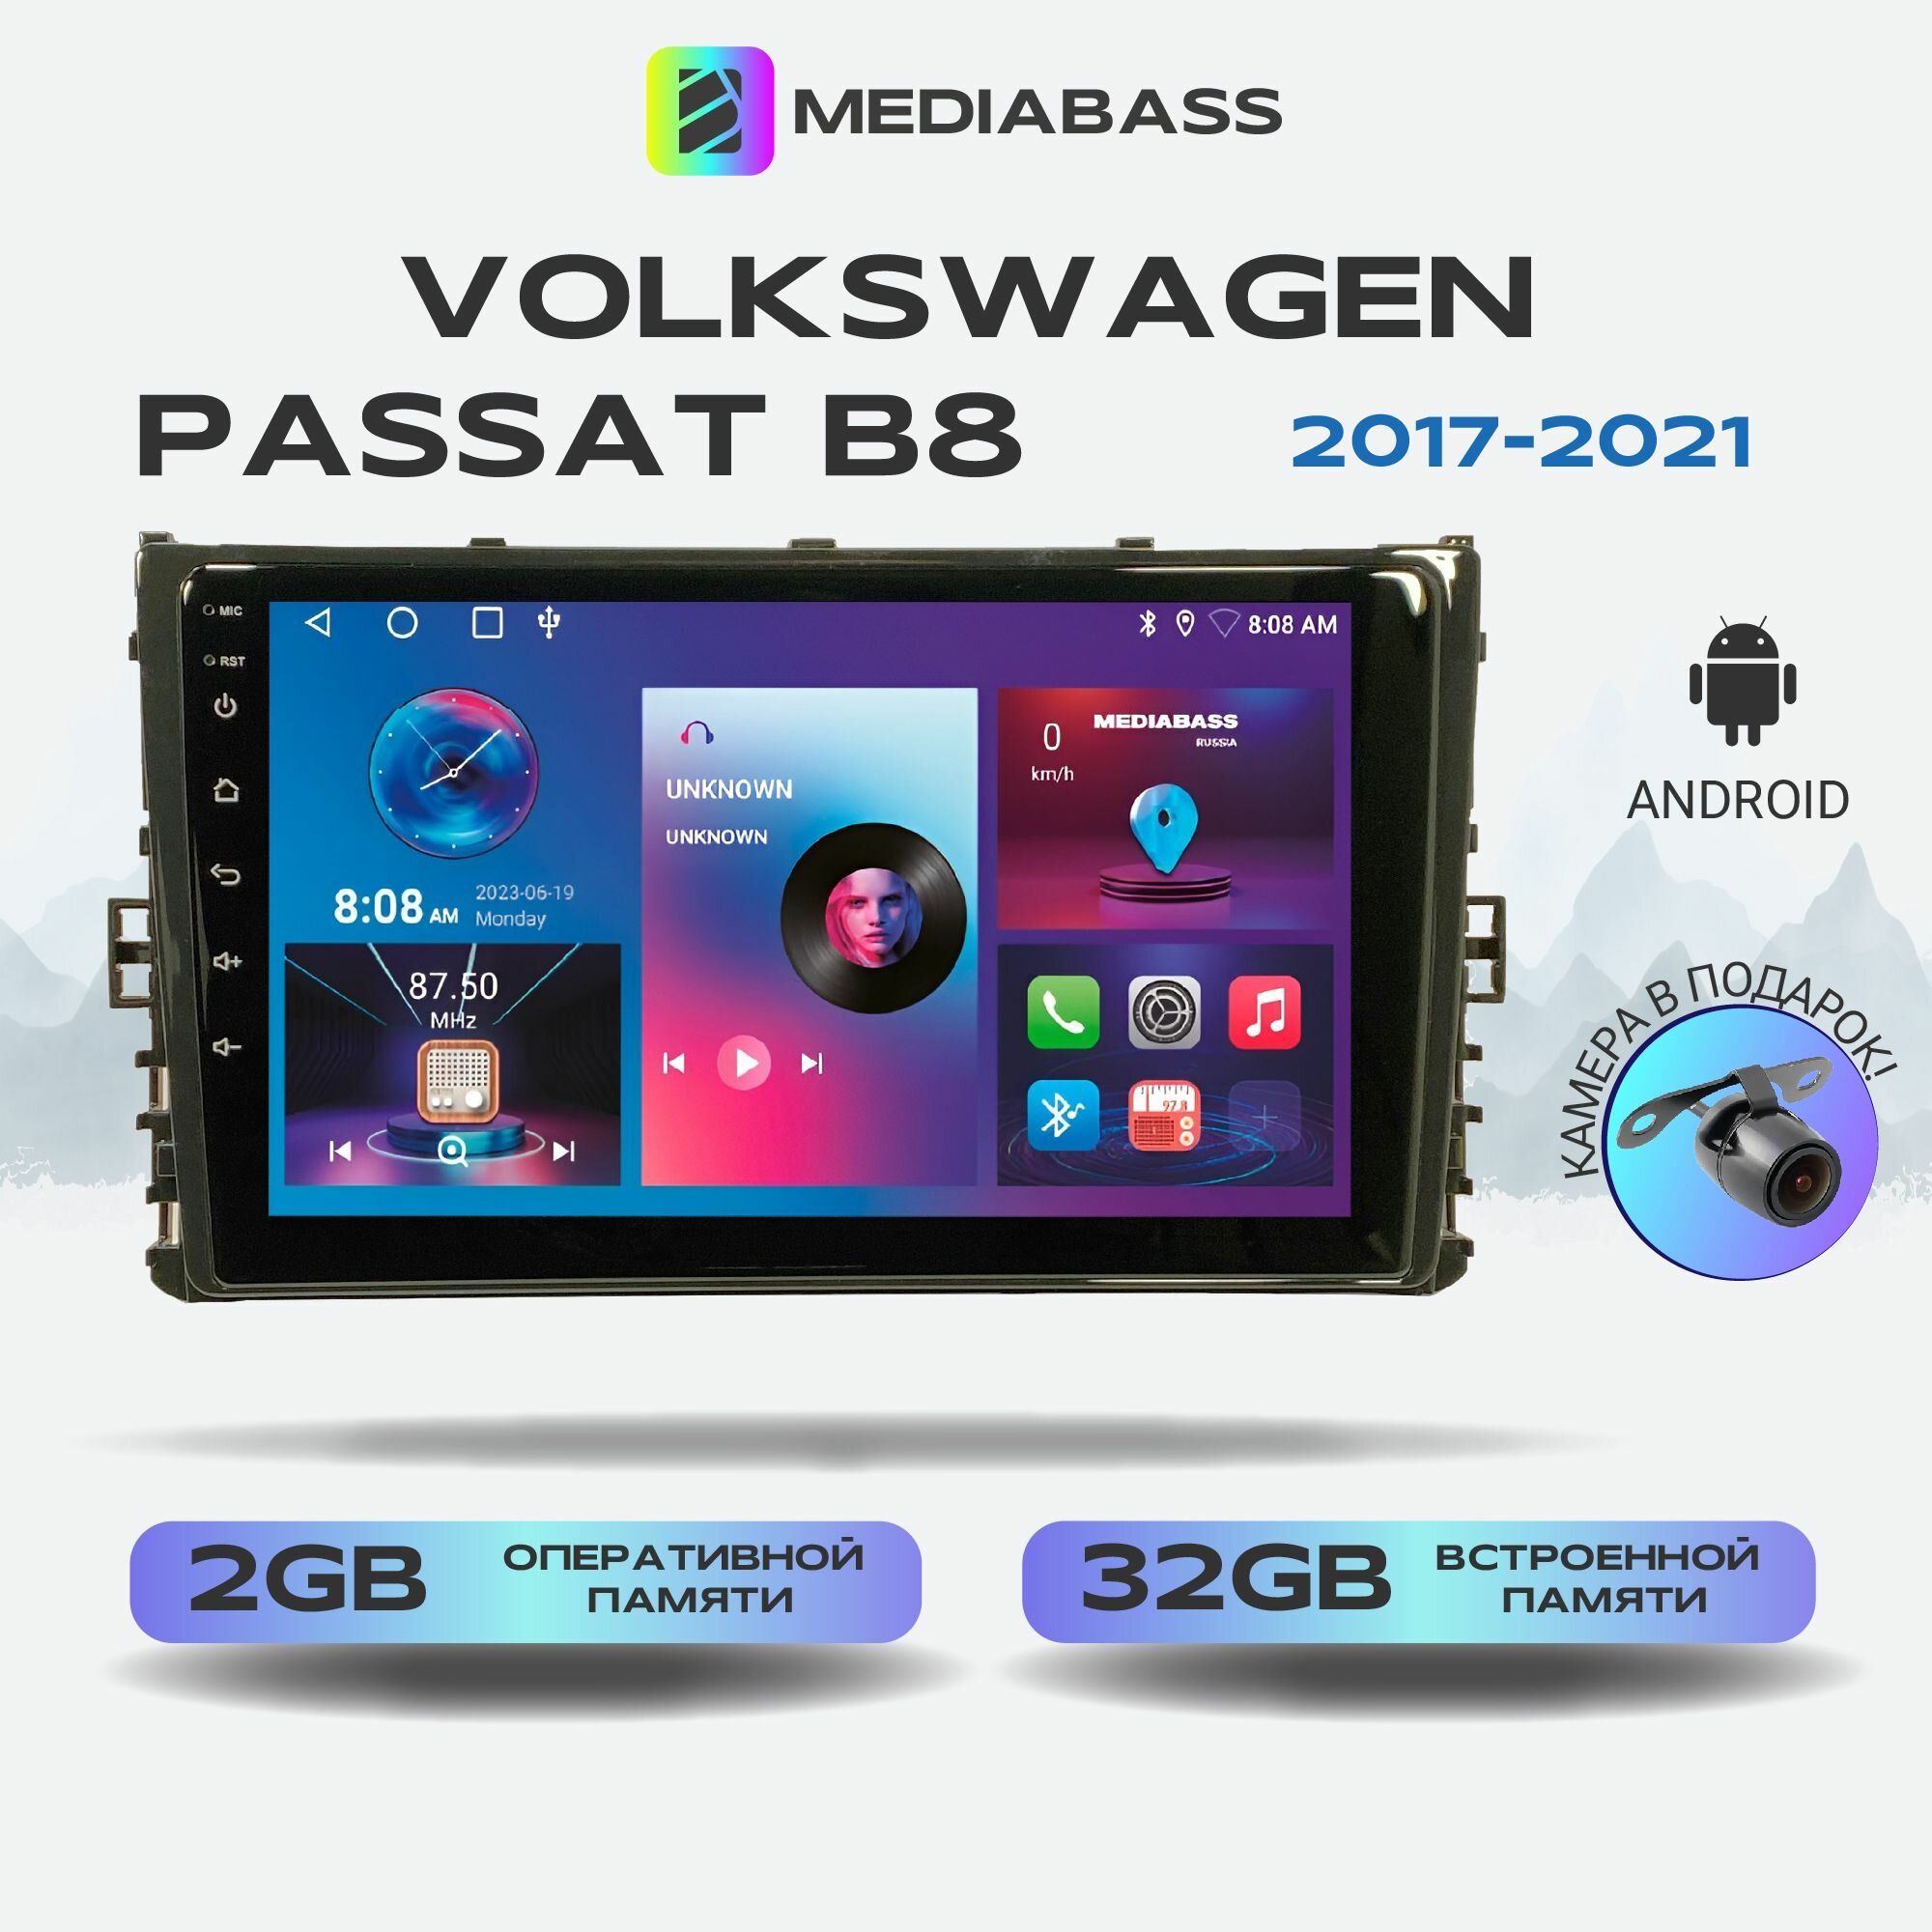 Автомагнитола Mediabass Volkswagen Passat B8 2017+, Android 12, 2/32ГБ, 4-ядерный процессор, QLED экран с разрешением 1280*720, чип-усилитель YD7388 / Фольксваген Пассат Б8